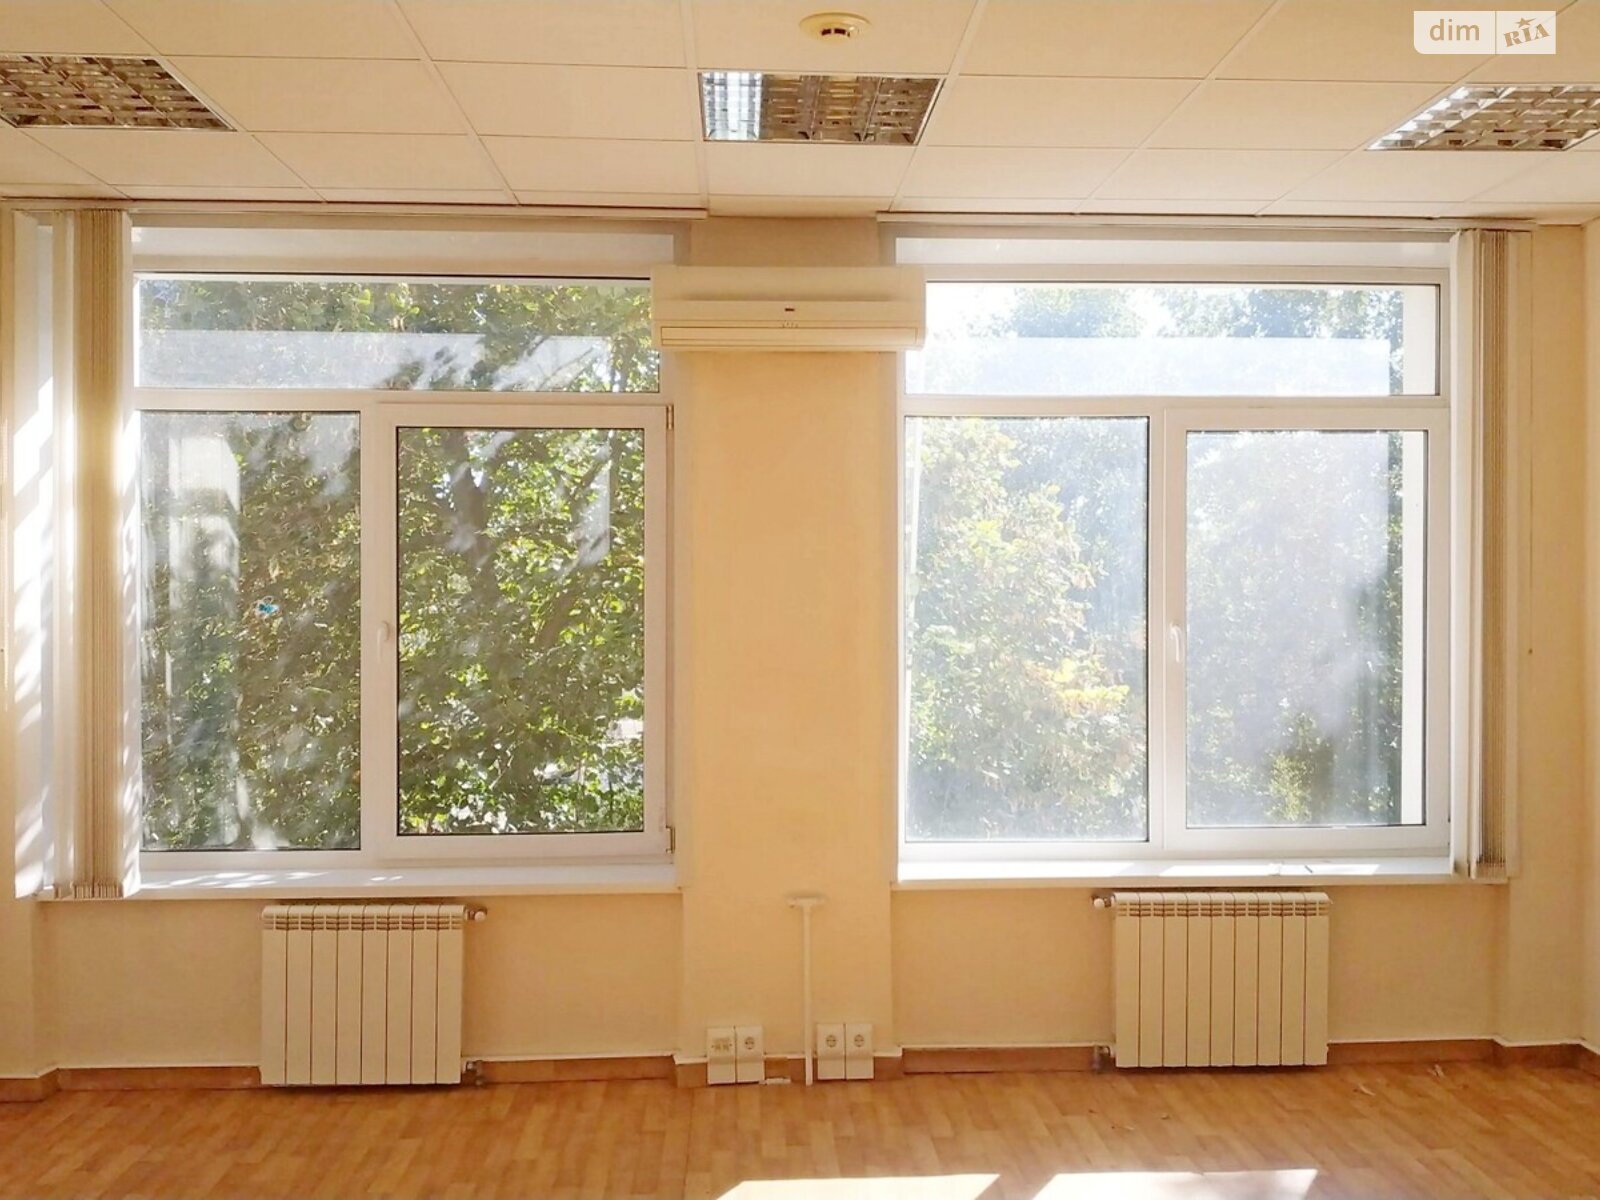 Аренда офисного помещения в Киеве, Мартовская улица, помещений - 1, этаж - 3 фото 1